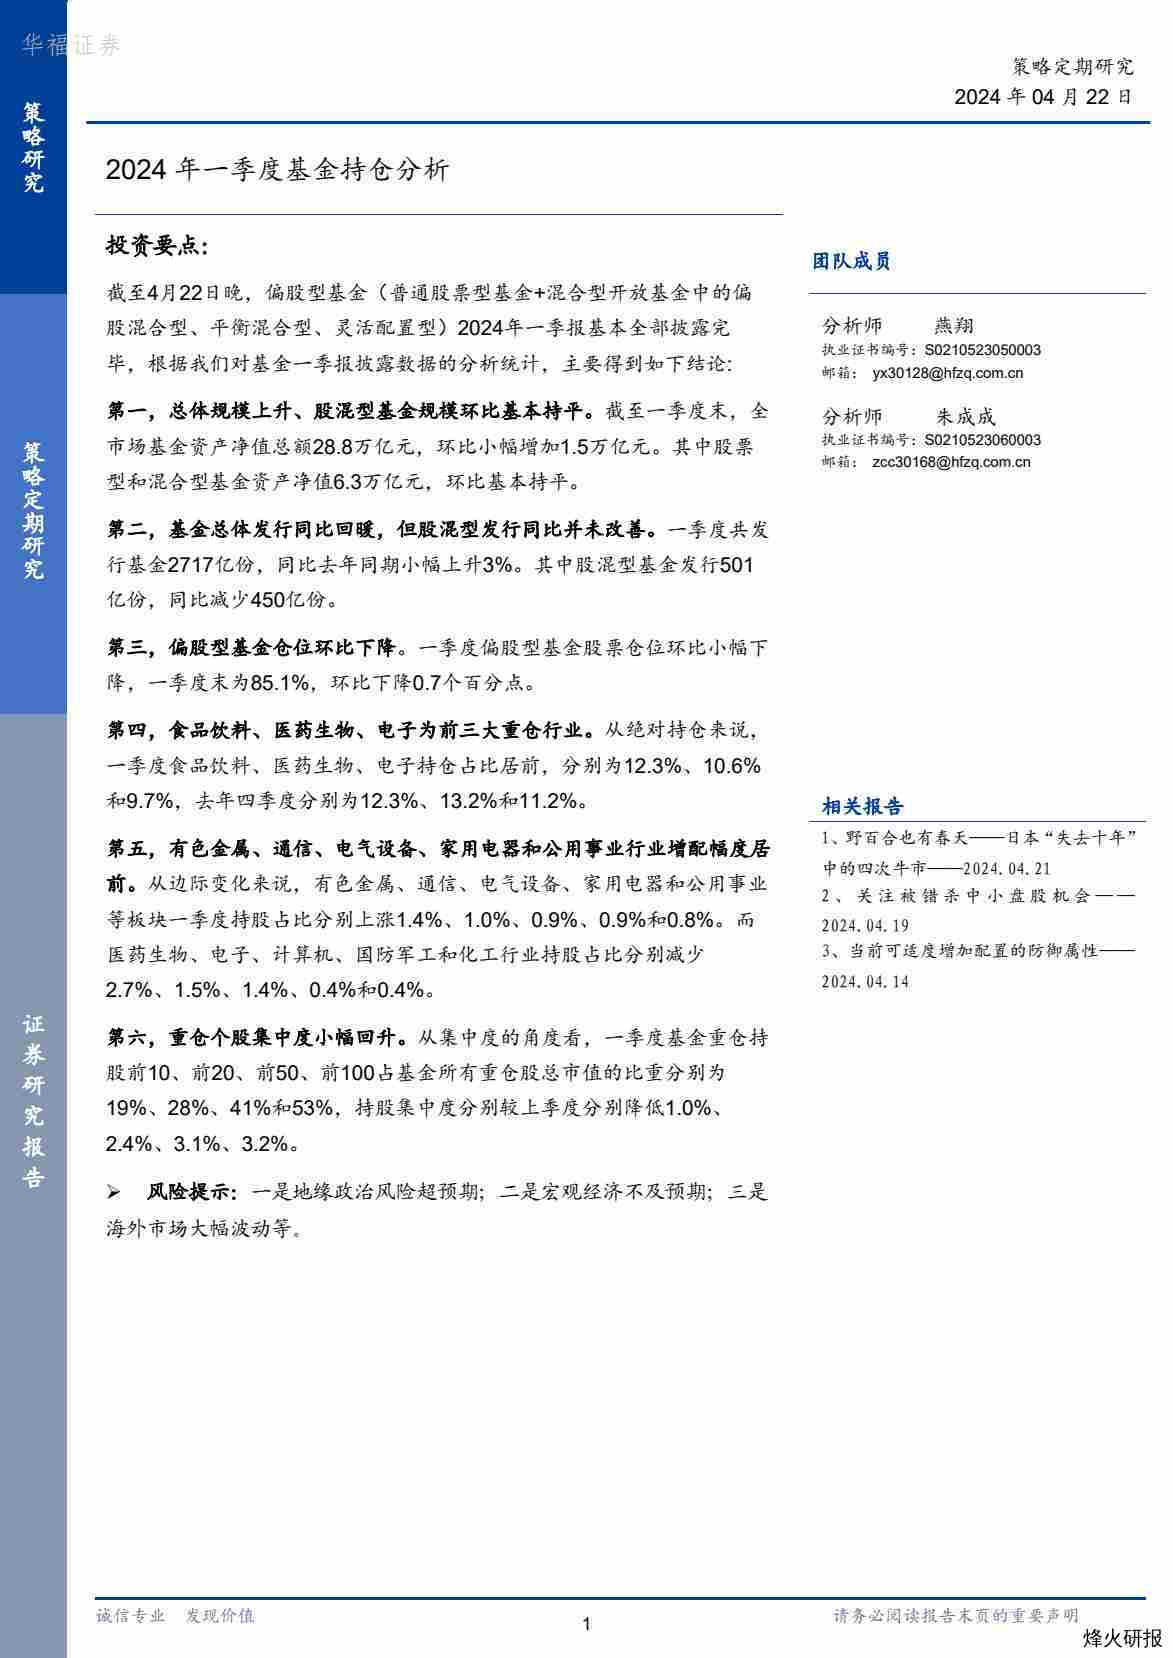 【华福证券】2024年一季度基金持仓分析.pdf-第一页